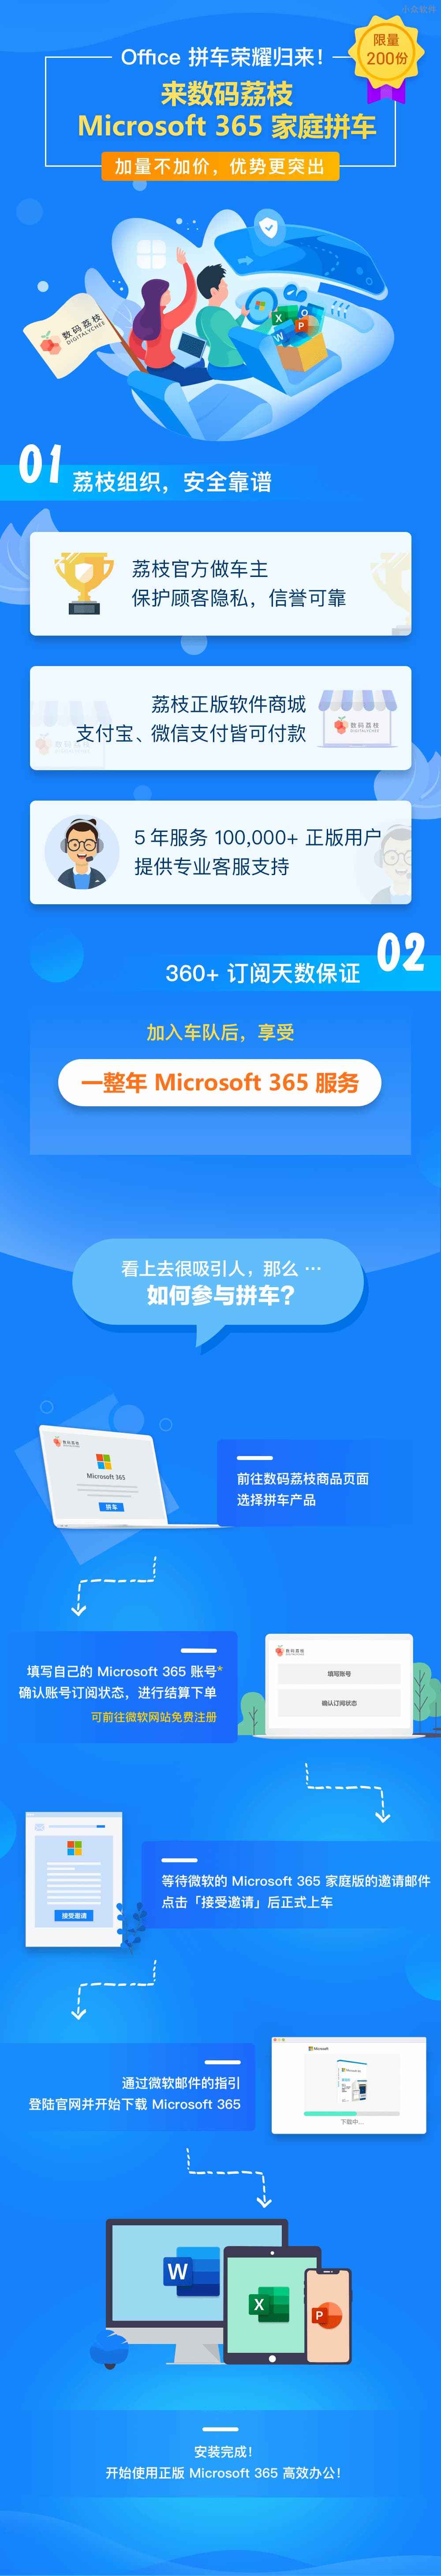 Microsoft 365 共享版，限量 200 份，全套 Office 套件与 1T OneDrive 享一年 4